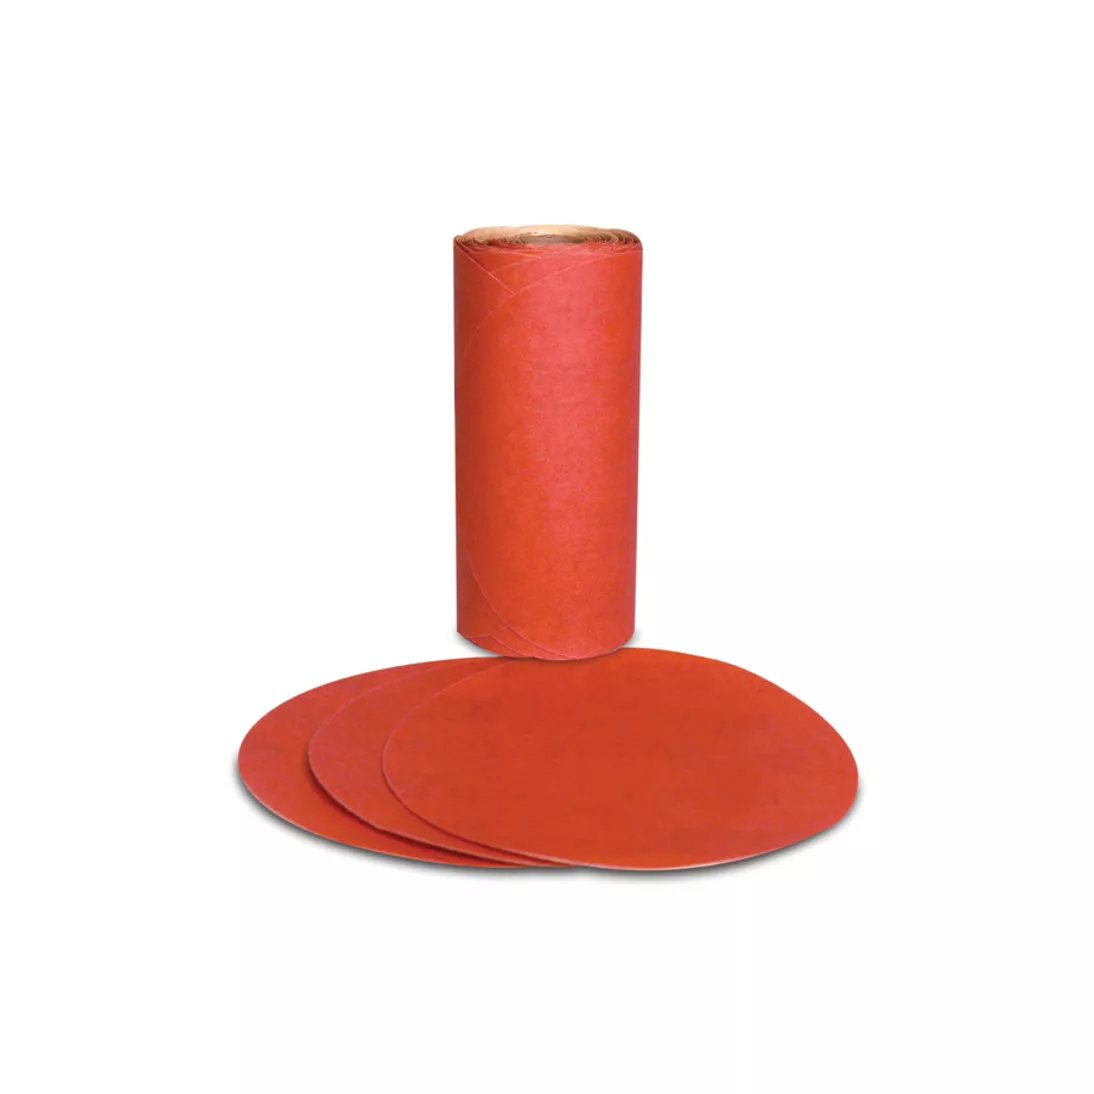 3M™ Red Abrasive PSA Disc, 01602, 5 in, P400, 100 discs per roll, 6
rolls per case